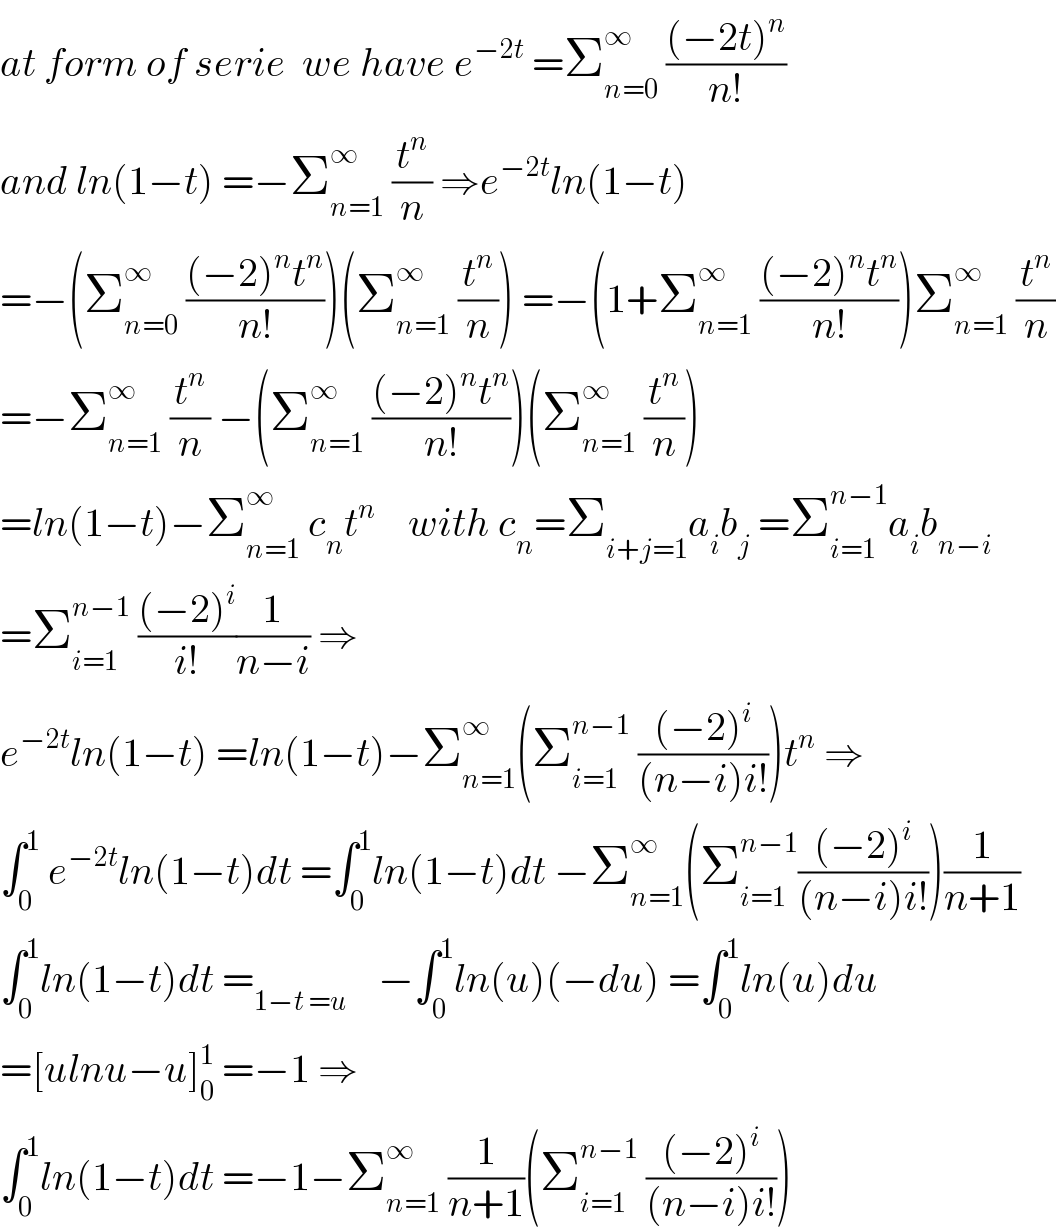 at form of serie  we have e^(−2t)  =Σ_(n=0) ^∞  (((−2t)^n )/(n!))  and ln(1−t) =−Σ_(n=1) ^∞  (t^n /n) ⇒e^(−2t) ln(1−t)  =−(Σ_(n=0) ^∞  (((−2)^n t^n )/(n!)))(Σ_(n=1) ^∞  (t^n /n)) =−(1+Σ_(n=1) ^∞  (((−2)^n t^n )/(n!)))Σ_(n=1) ^∞  (t^n /n)  =−Σ_(n=1) ^∞  (t^n /n) −(Σ_(n=1) ^∞  (((−2)^n t^n )/(n!)))(Σ_(n=1) ^∞  (t^n /n))  =ln(1−t)−Σ_(n=1) ^∞  c_n t^n     with c_n =Σ_(i+j=1) a_i b_j  =Σ_(i=1) ^(n−1) a_i b_(n−i)   =Σ_(i=1) ^(n−1)  (((−2)^i )/(i!))(1/(n−i)) ⇒  e^(−2t) ln(1−t) =ln(1−t)−Σ_(n=1) ^∞ (Σ_(i=1) ^(n−1)  (((−2)^i )/((n−i)i!)))t^n  ⇒  ∫_0 ^1  e^(−2t) ln(1−t)dt =∫_0 ^1 ln(1−t)dt −Σ_(n=1) ^∞ (Σ_(i=1) ^(n−1) (((−2)^i )/((n−i)i!)))(1/(n+1))  ∫_0 ^1 ln(1−t)dt =_(1−t =u)     −∫_0 ^1 ln(u)(−du) =∫_0 ^1 ln(u)du  =[ulnu−u]_0 ^1  =−1 ⇒  ∫_0 ^1 ln(1−t)dt =−1−Σ_(n=1) ^∞  (1/(n+1))(Σ_(i=1) ^(n−1)  (((−2)^i )/((n−i)i!)))  